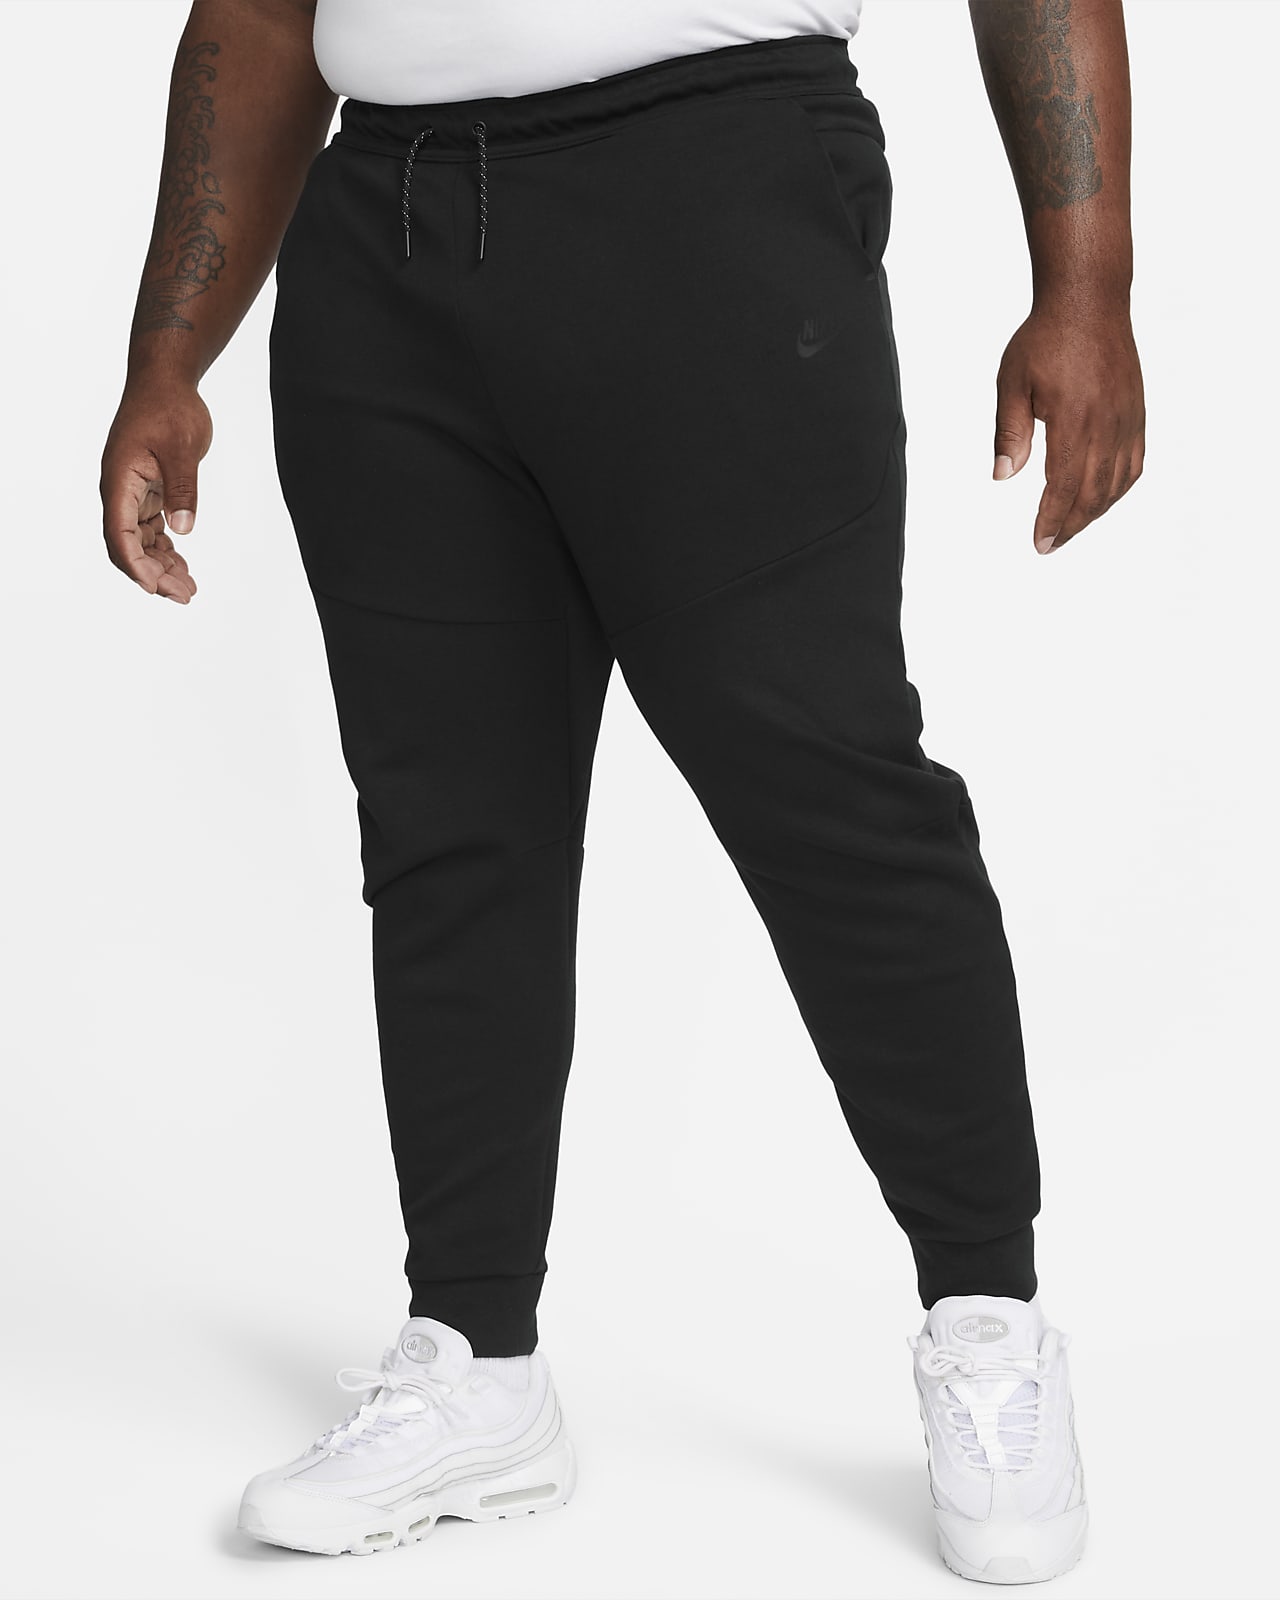 Nike Sportswear Tech Fleece Joggers Worn-In Men's Size L CZ9918-010